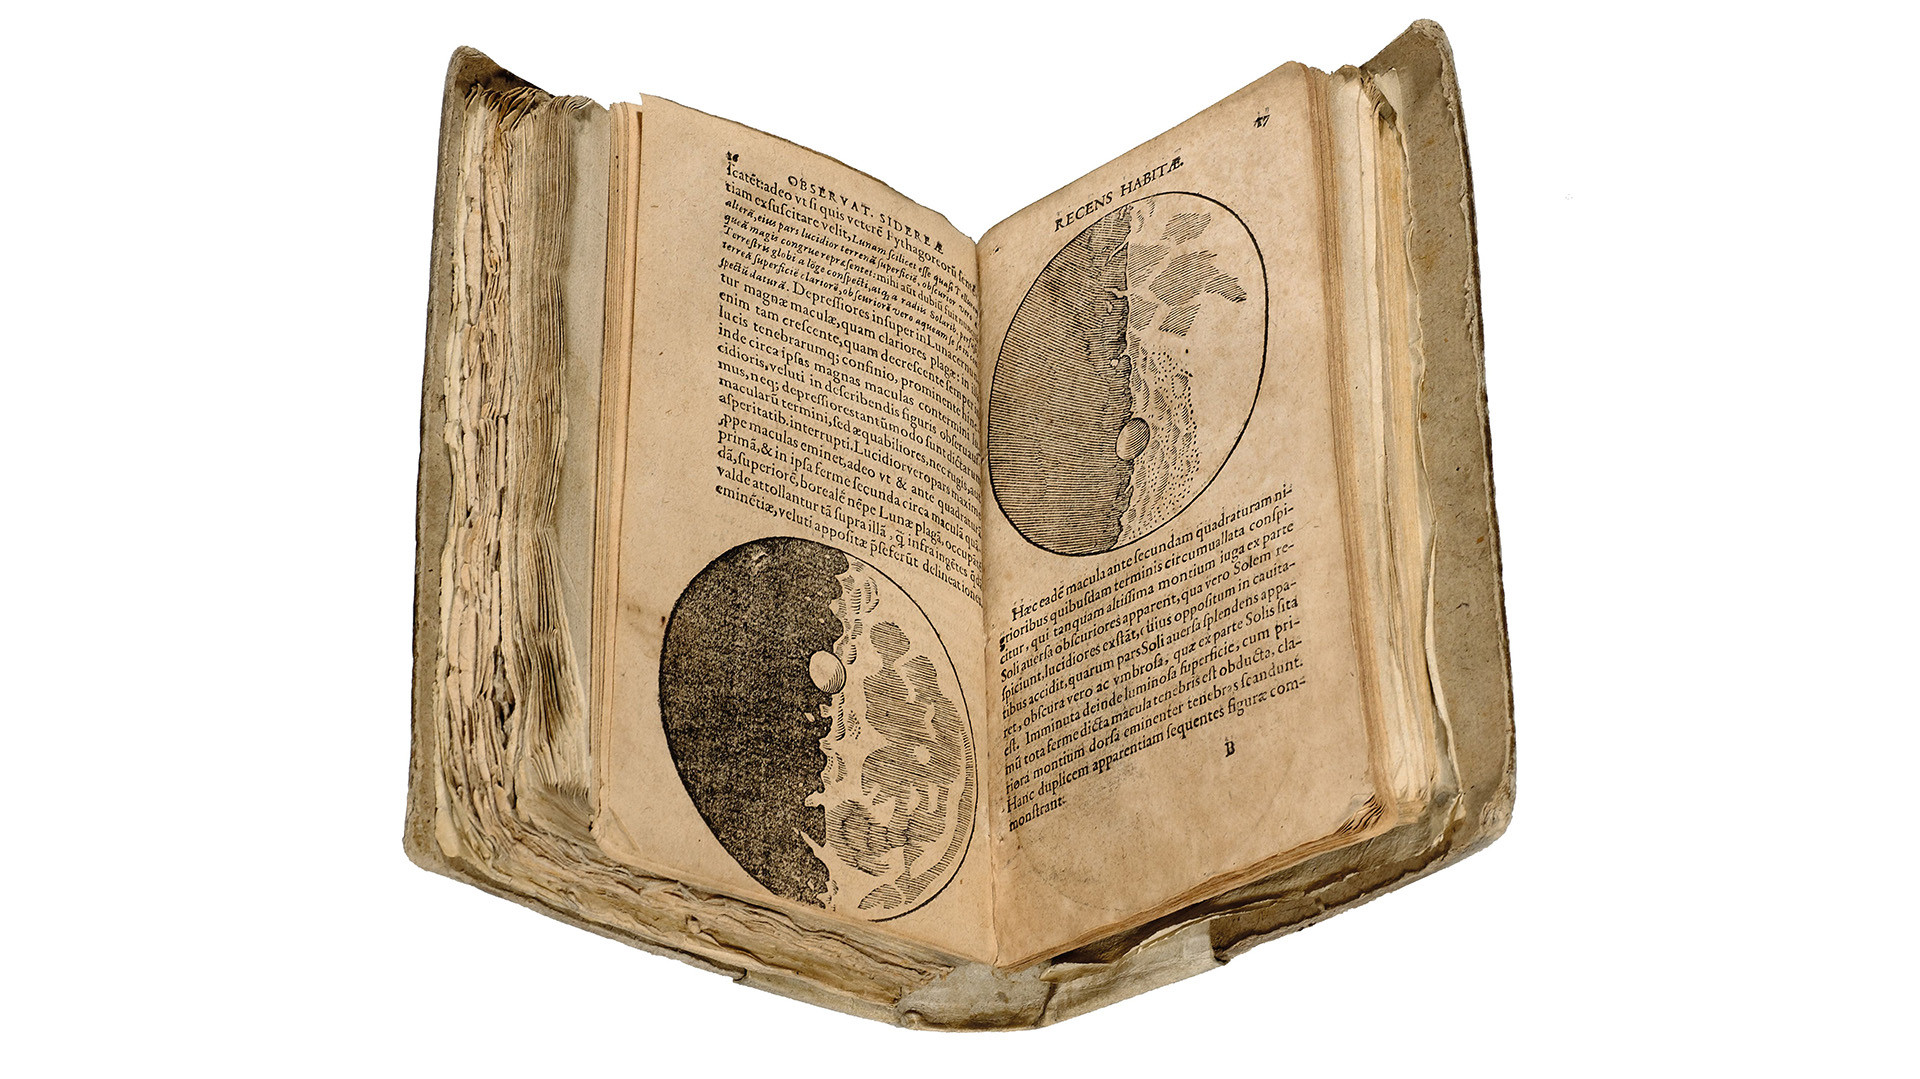 Otra obra notable de Galileo Galilei: “Sidereus Nuncius” o “Mensajero Sideral”. En 2021 se supo que el original, que se conservaba en la Biblioteca Nacional de España, había sido robado y falsificado 25 años atrás